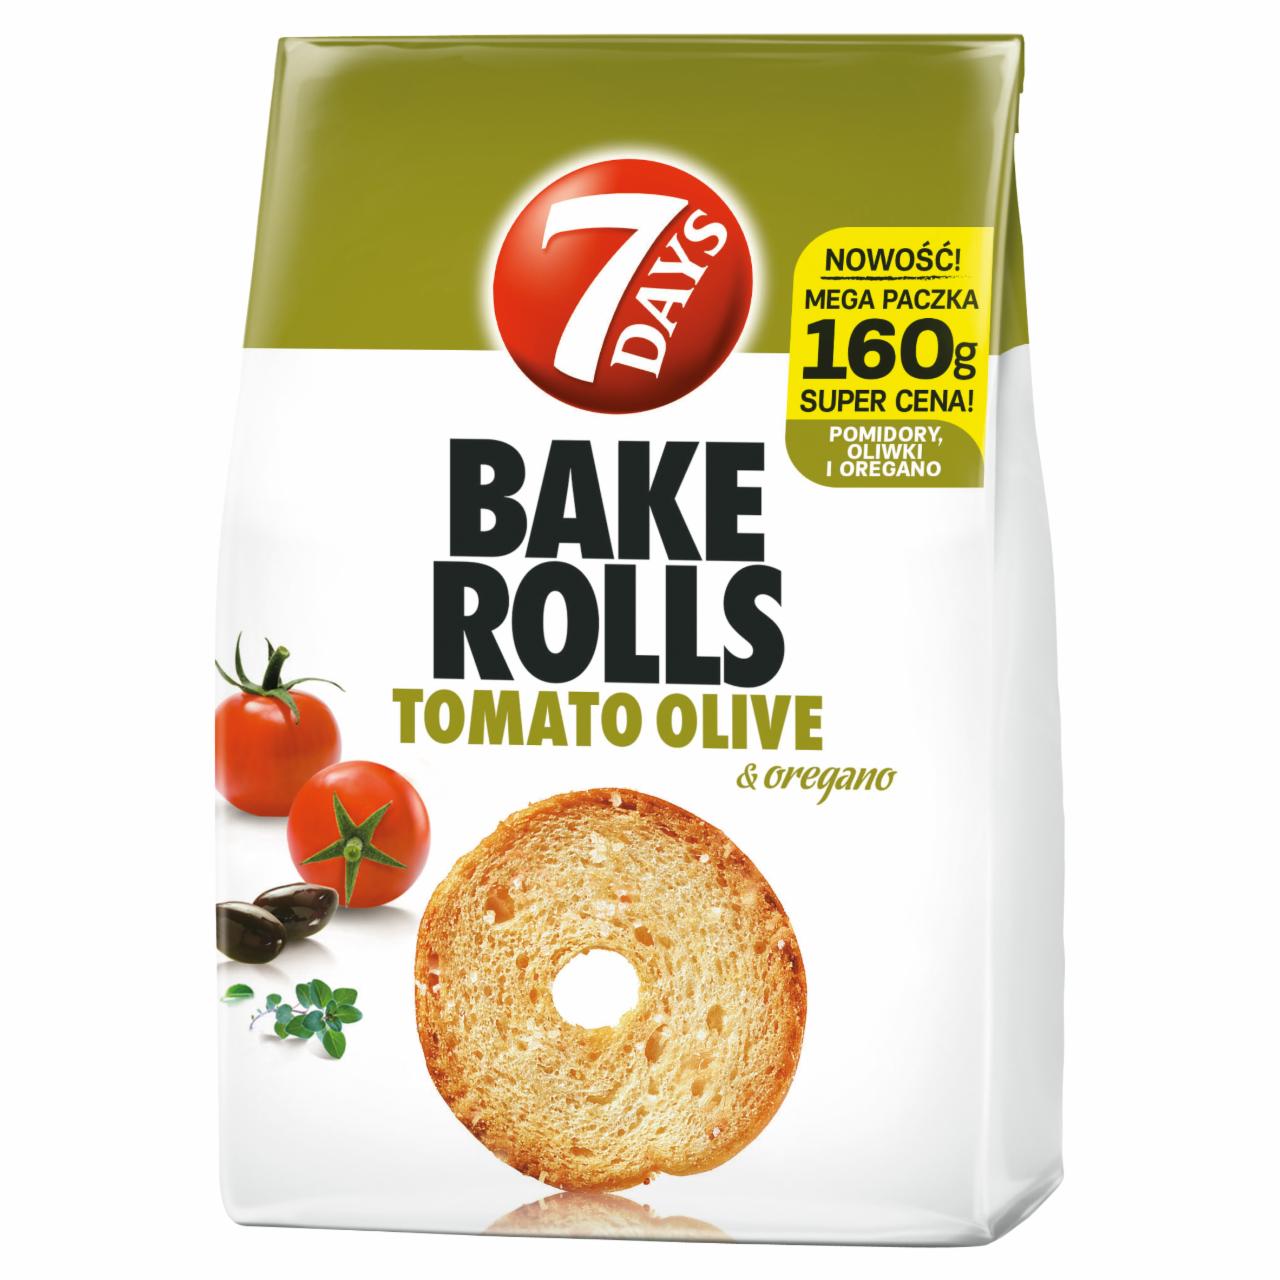 Zdjęcia - 7 Days Bake Rolls Chrupki chlebowe o smaku pomidorów oliwek i oregano 160 g